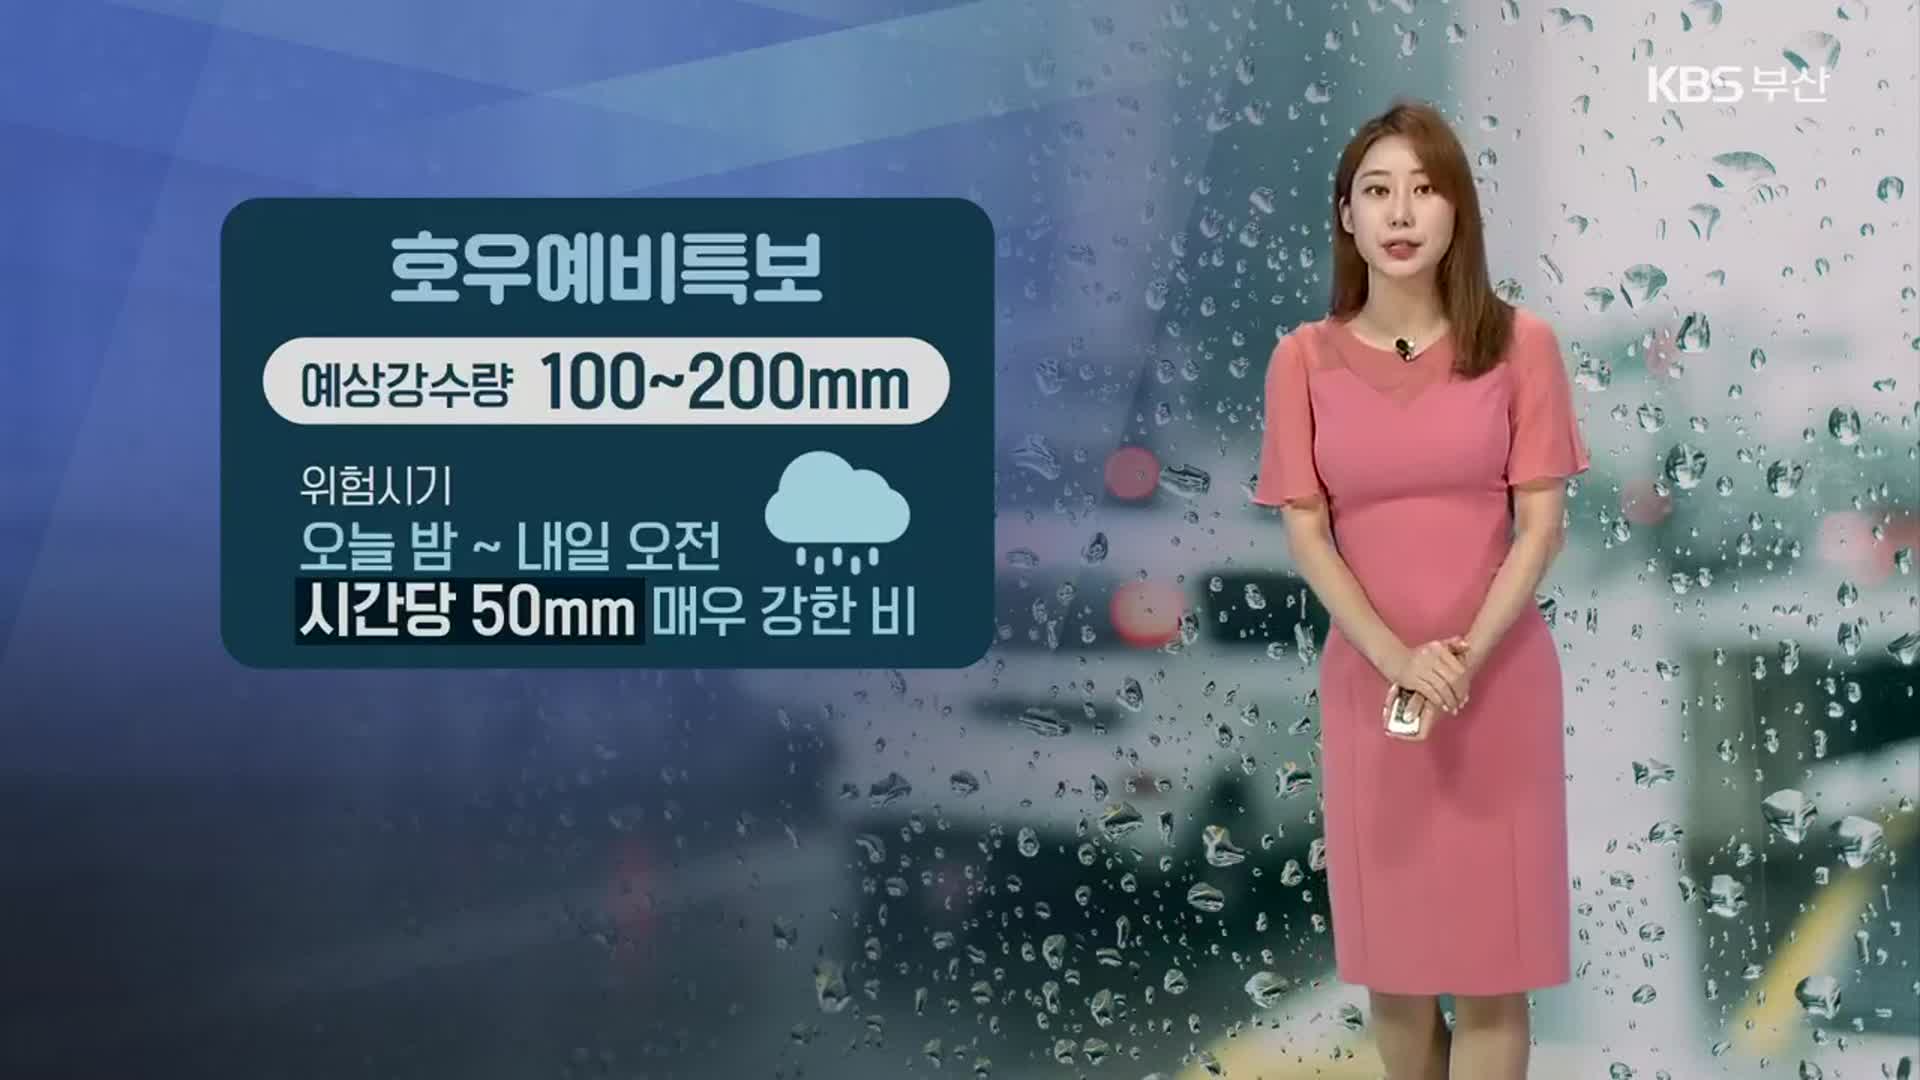 [날씨] 부산 오늘 밤~내일 오전 시간당 50㎜ 매우 강한 비